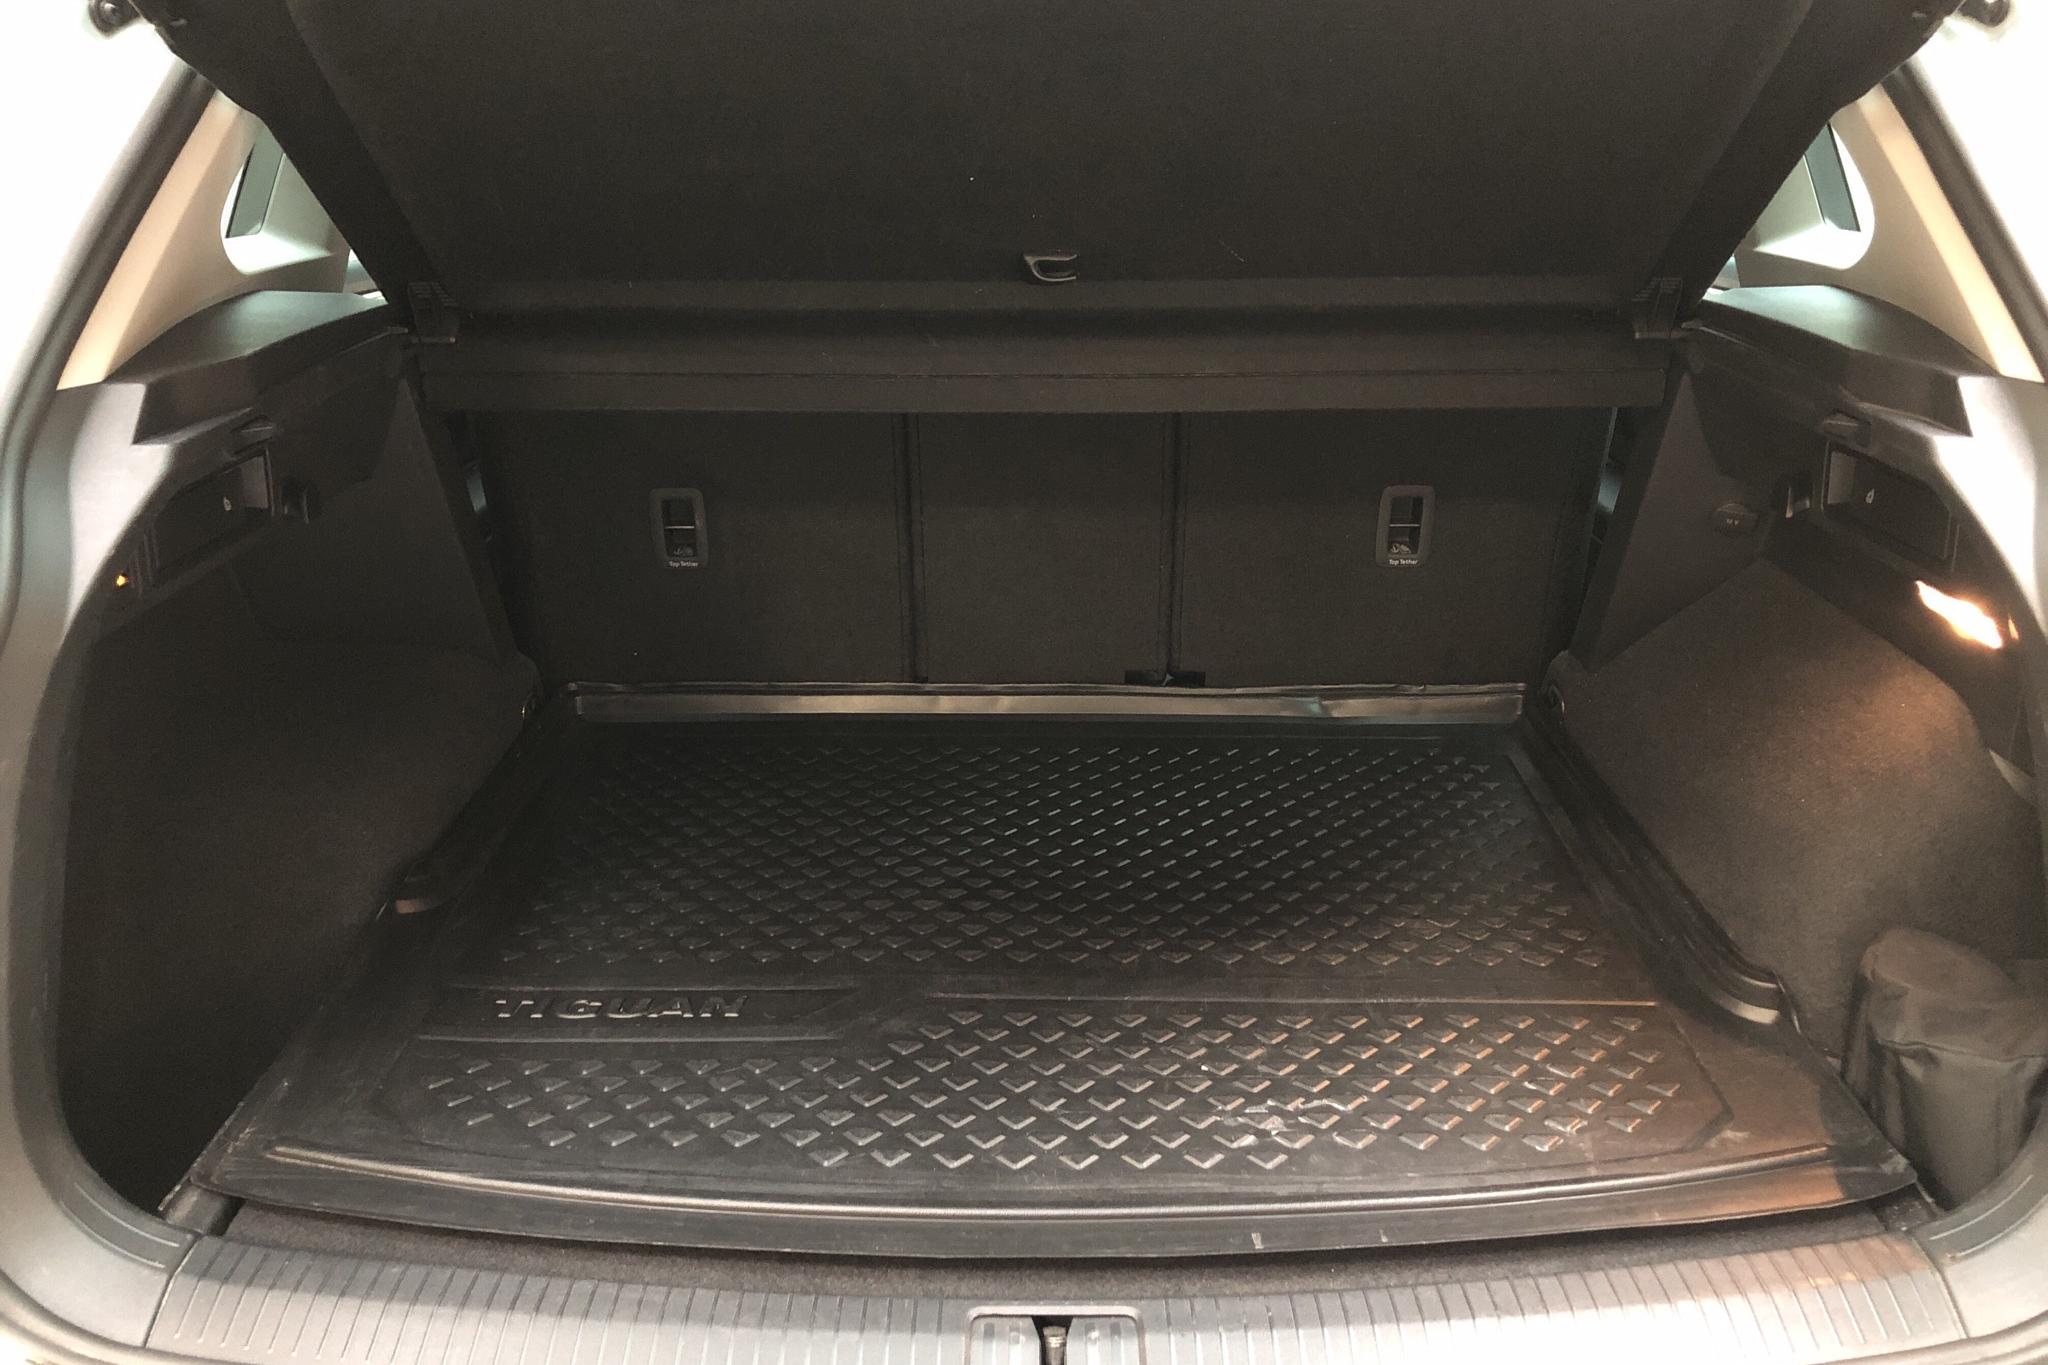 VW Tiguan 2.0 TDI 4MOTION (190hk) - 78 770 km - Automatic - silver - 2019